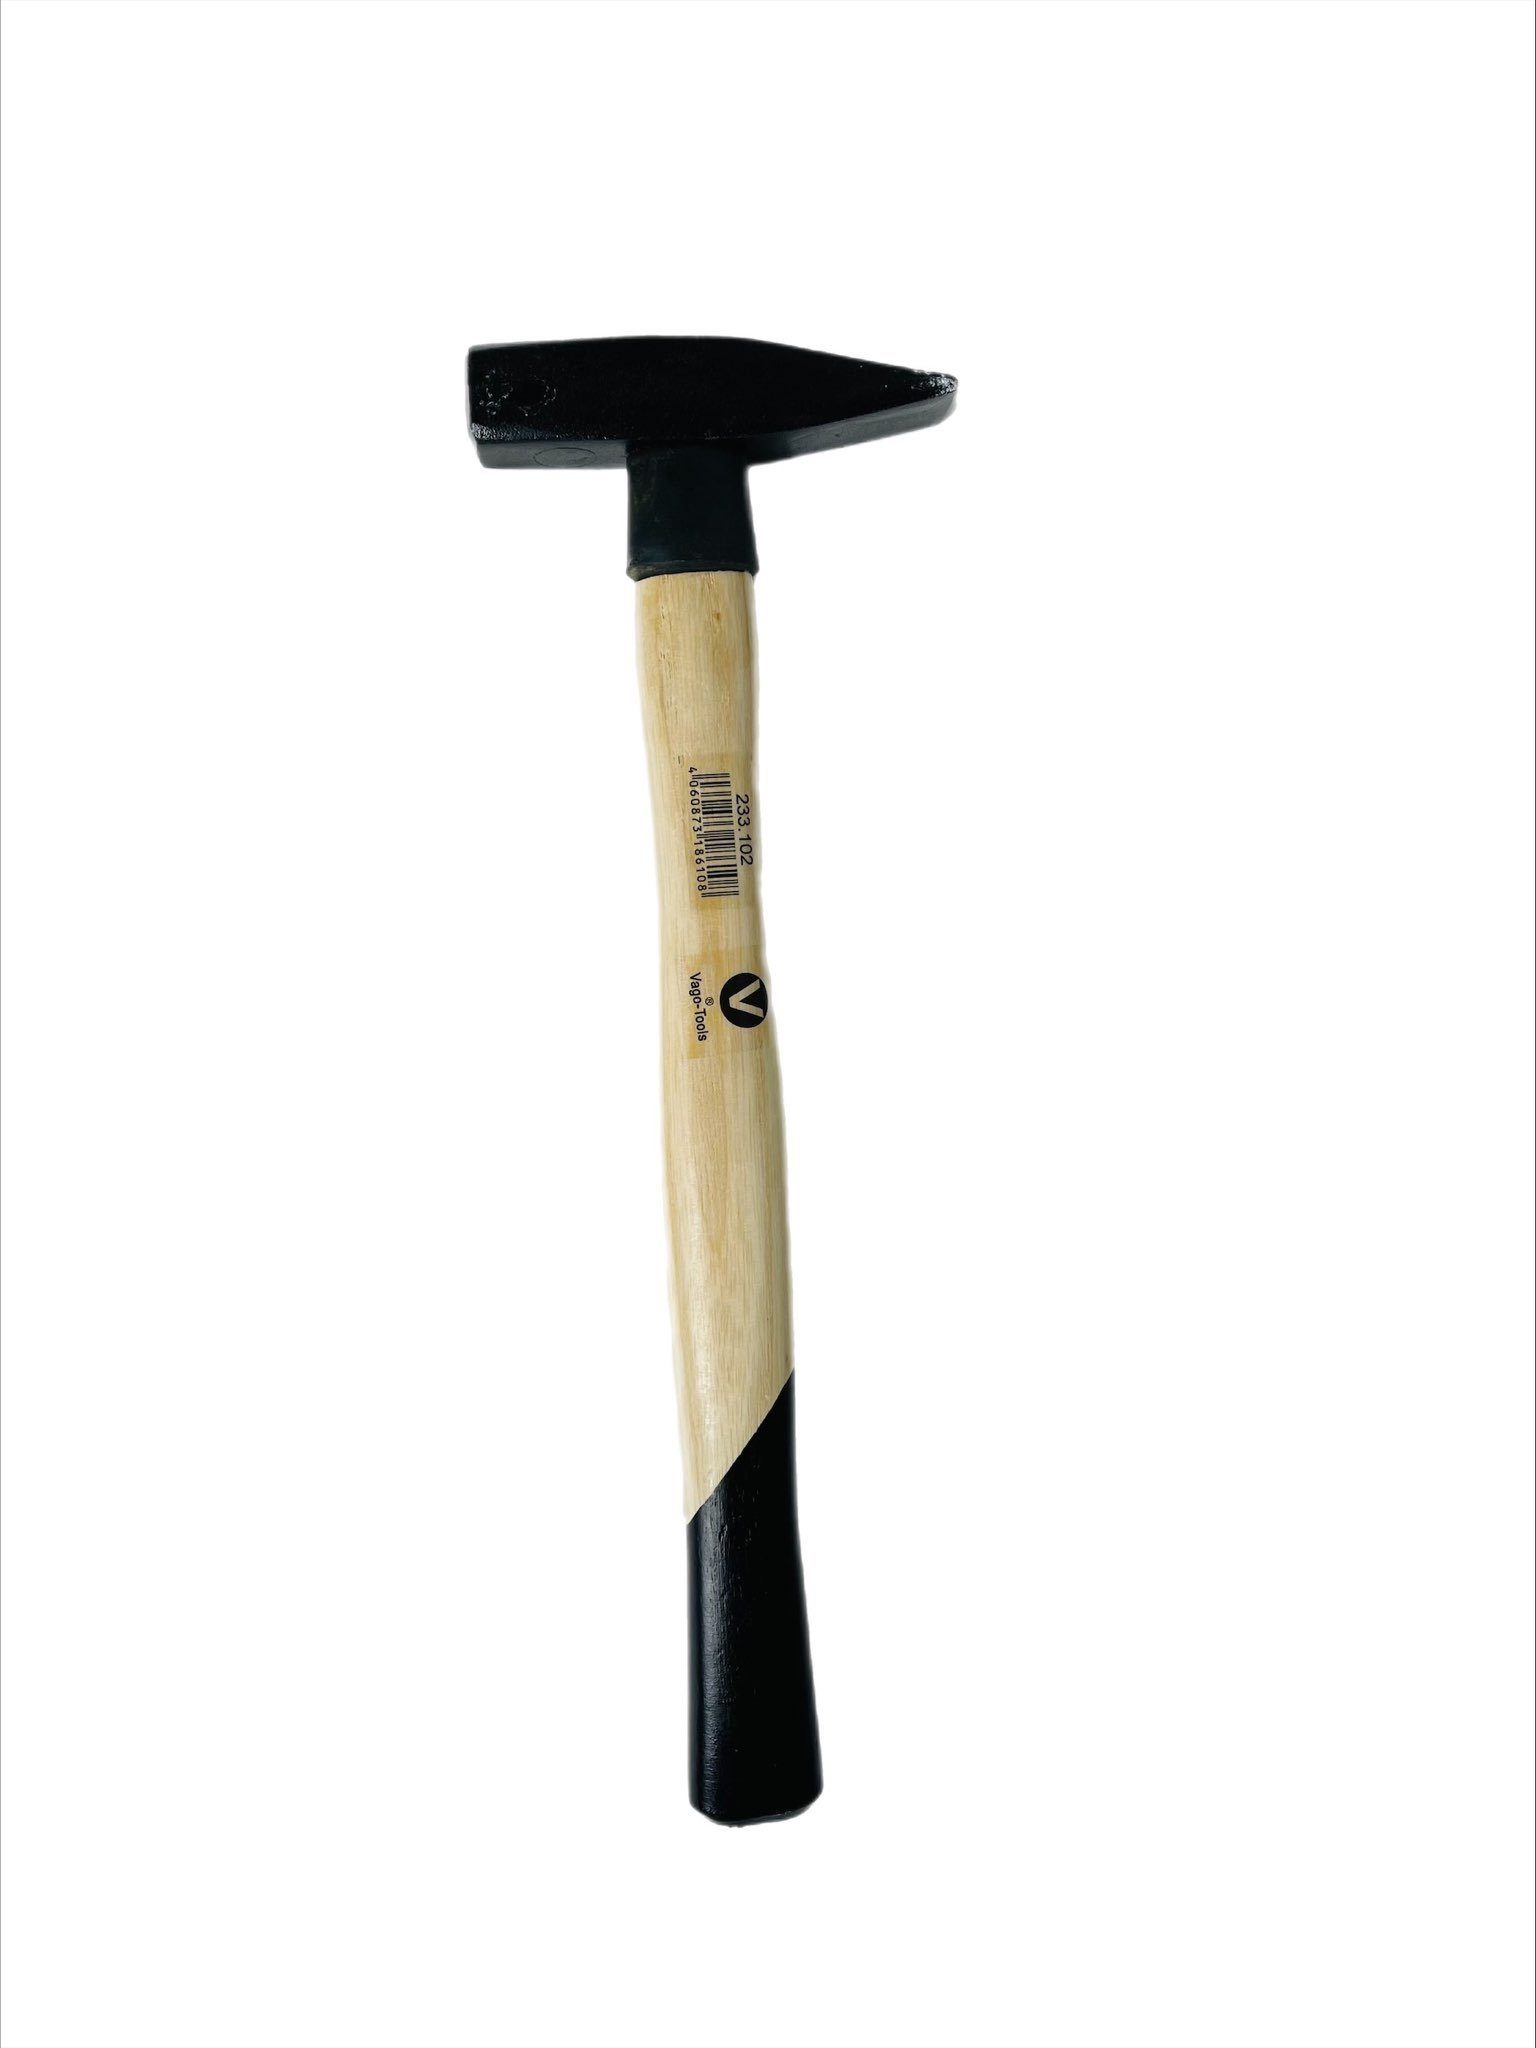 Schlosserhammer Hammer 100/200/300/800/1000g VaGo-Tools Hammer 5tlg